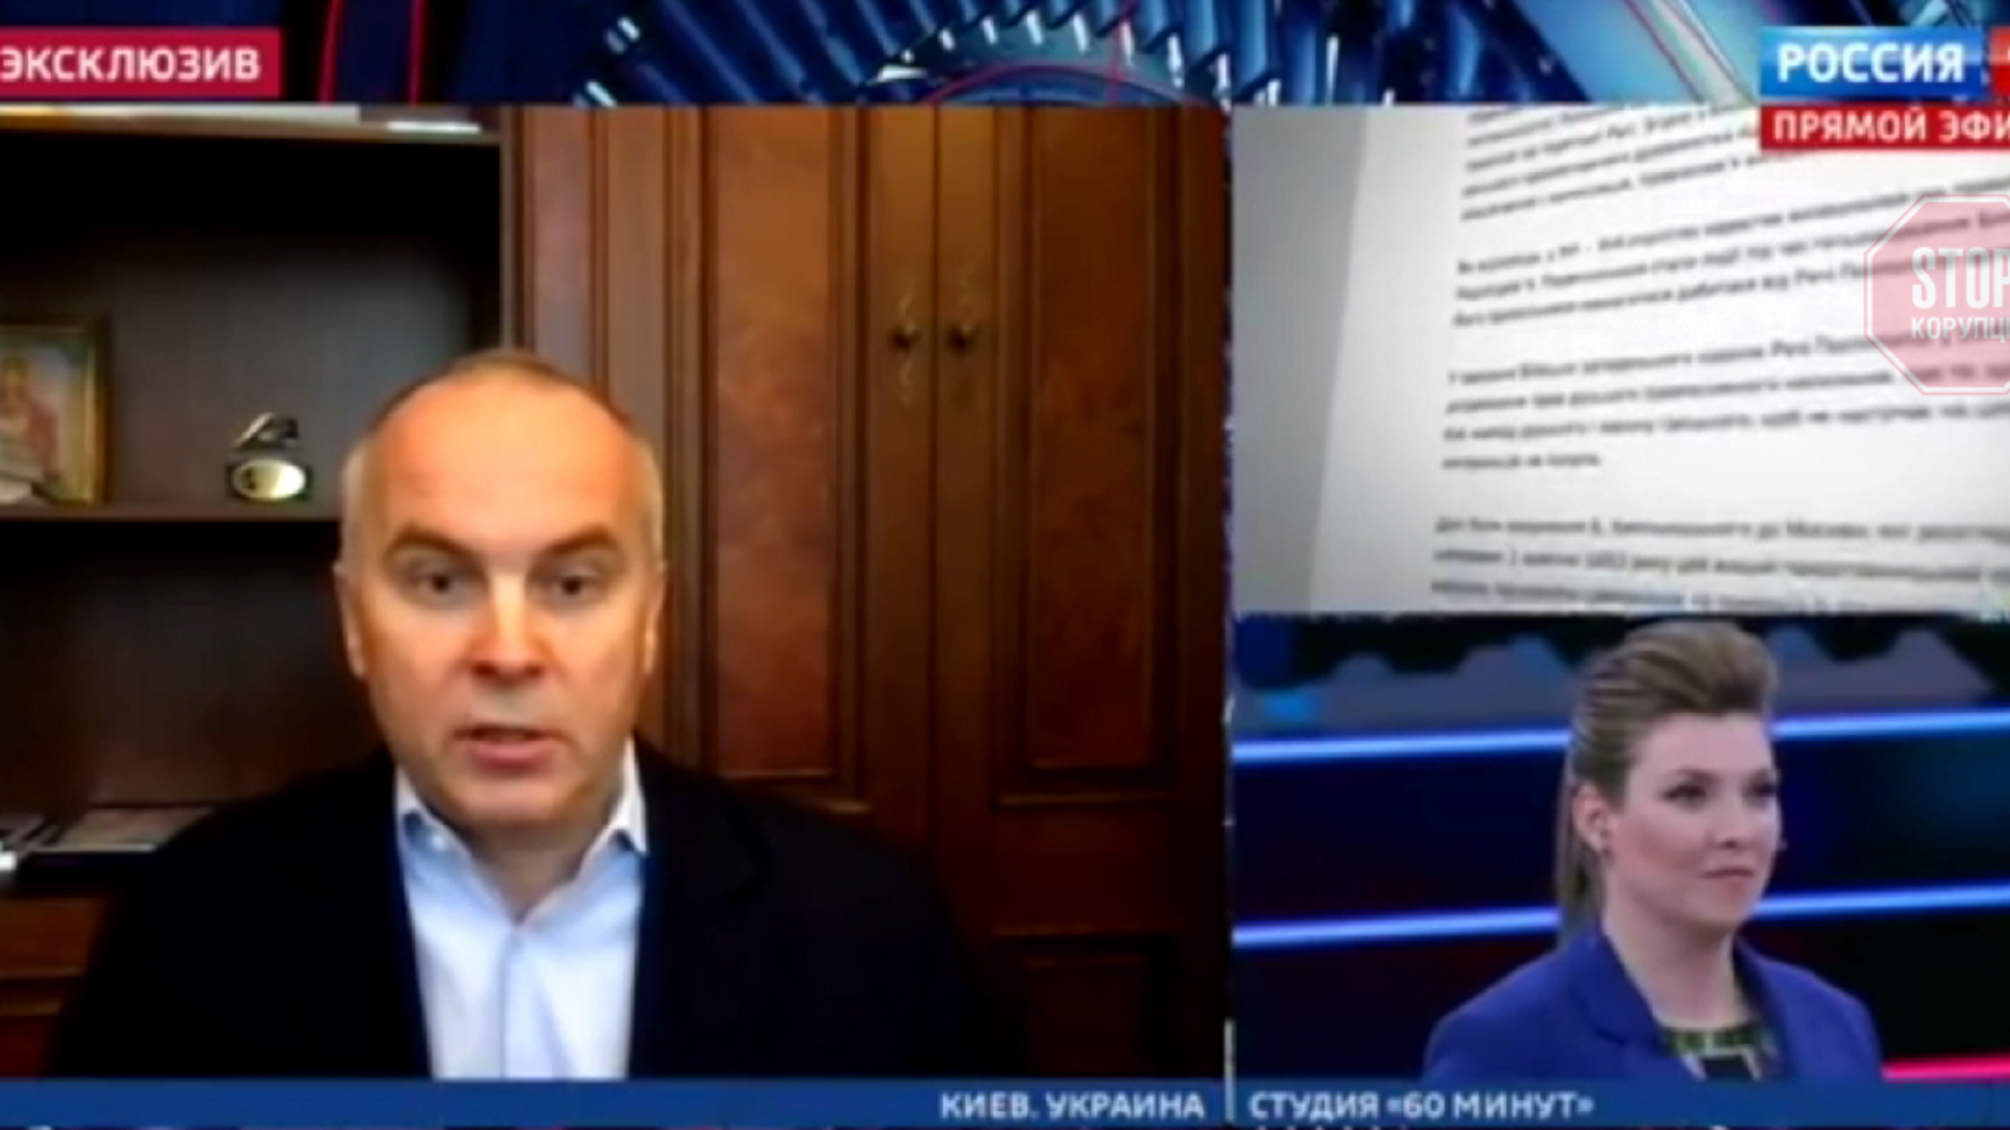 Депутат Шуфрич на РосТВ обвинил предков крымских татар в убийствах и изнасилованиях